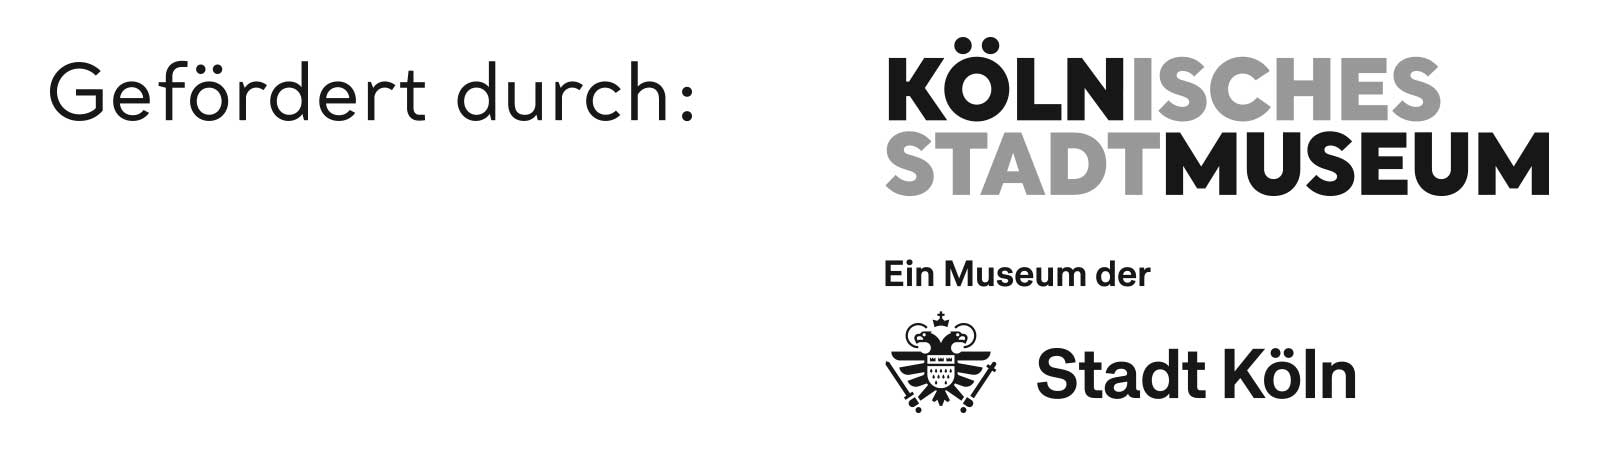 Logo gefördert durch Kölnisches Stadtmuseum, ein Museum der Stadt Köln